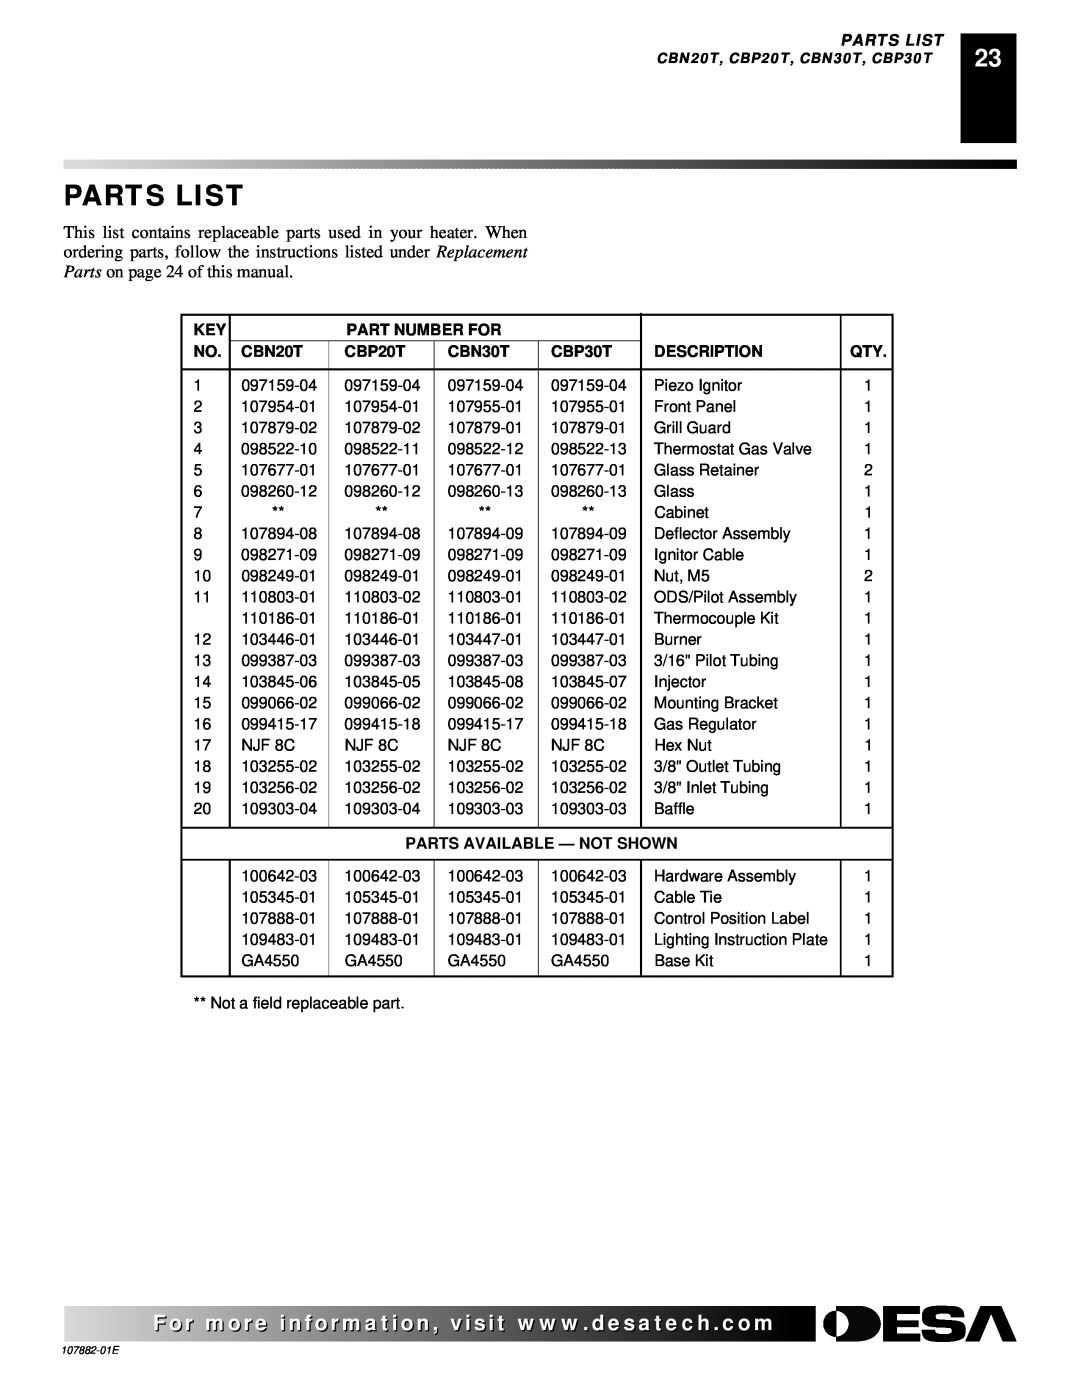 Desa Tech CBP20T Parts List, Part Number For, CBN20T, CBN30T, CBP30T, Description, Parts Available - Not Shown 